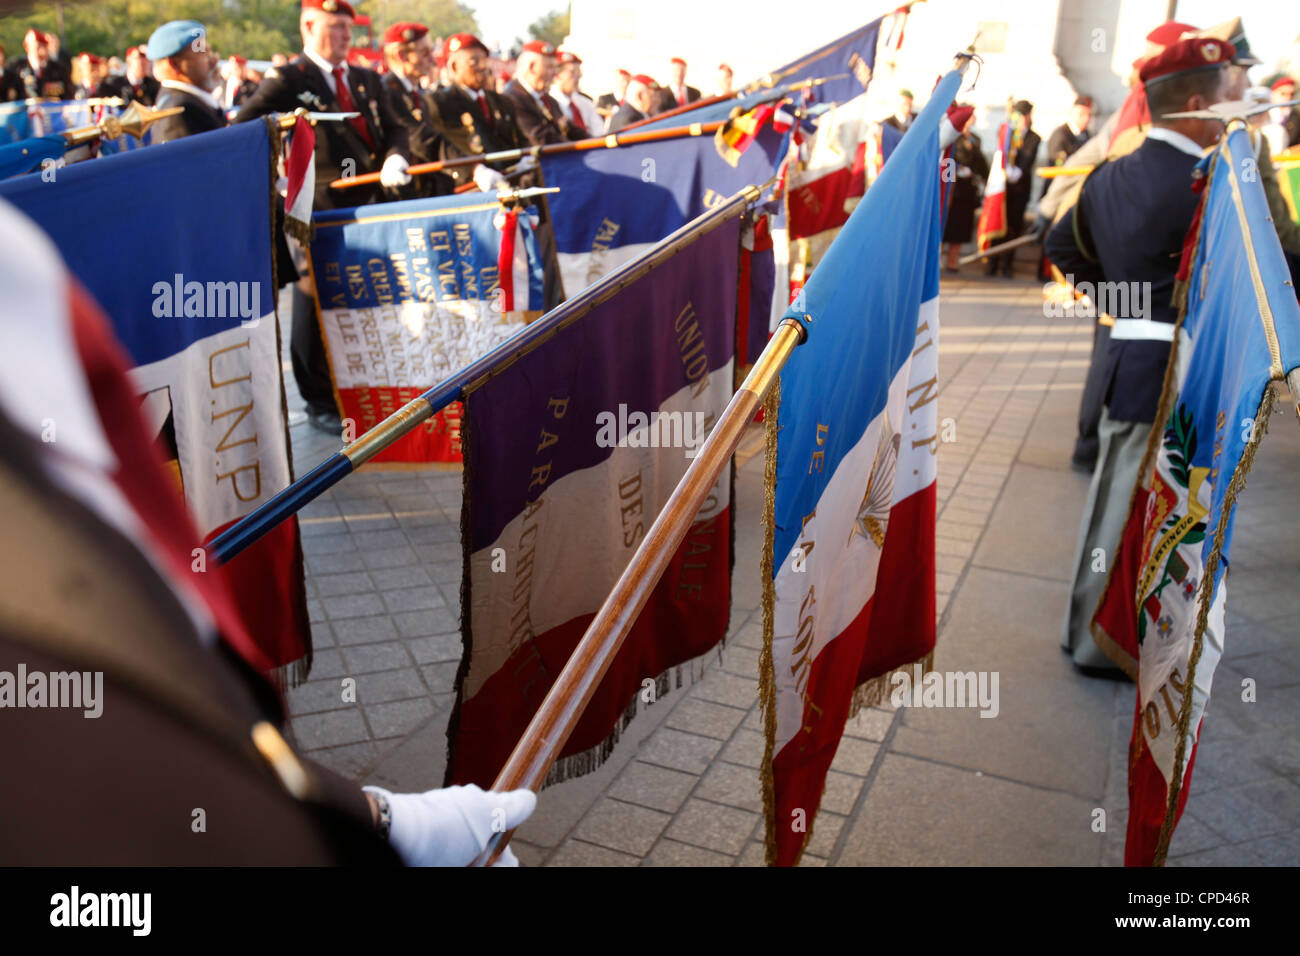 Les anciens combattants de la guerre à l'Arc de Triomphe, Paris, France, Europe Banque D'Images